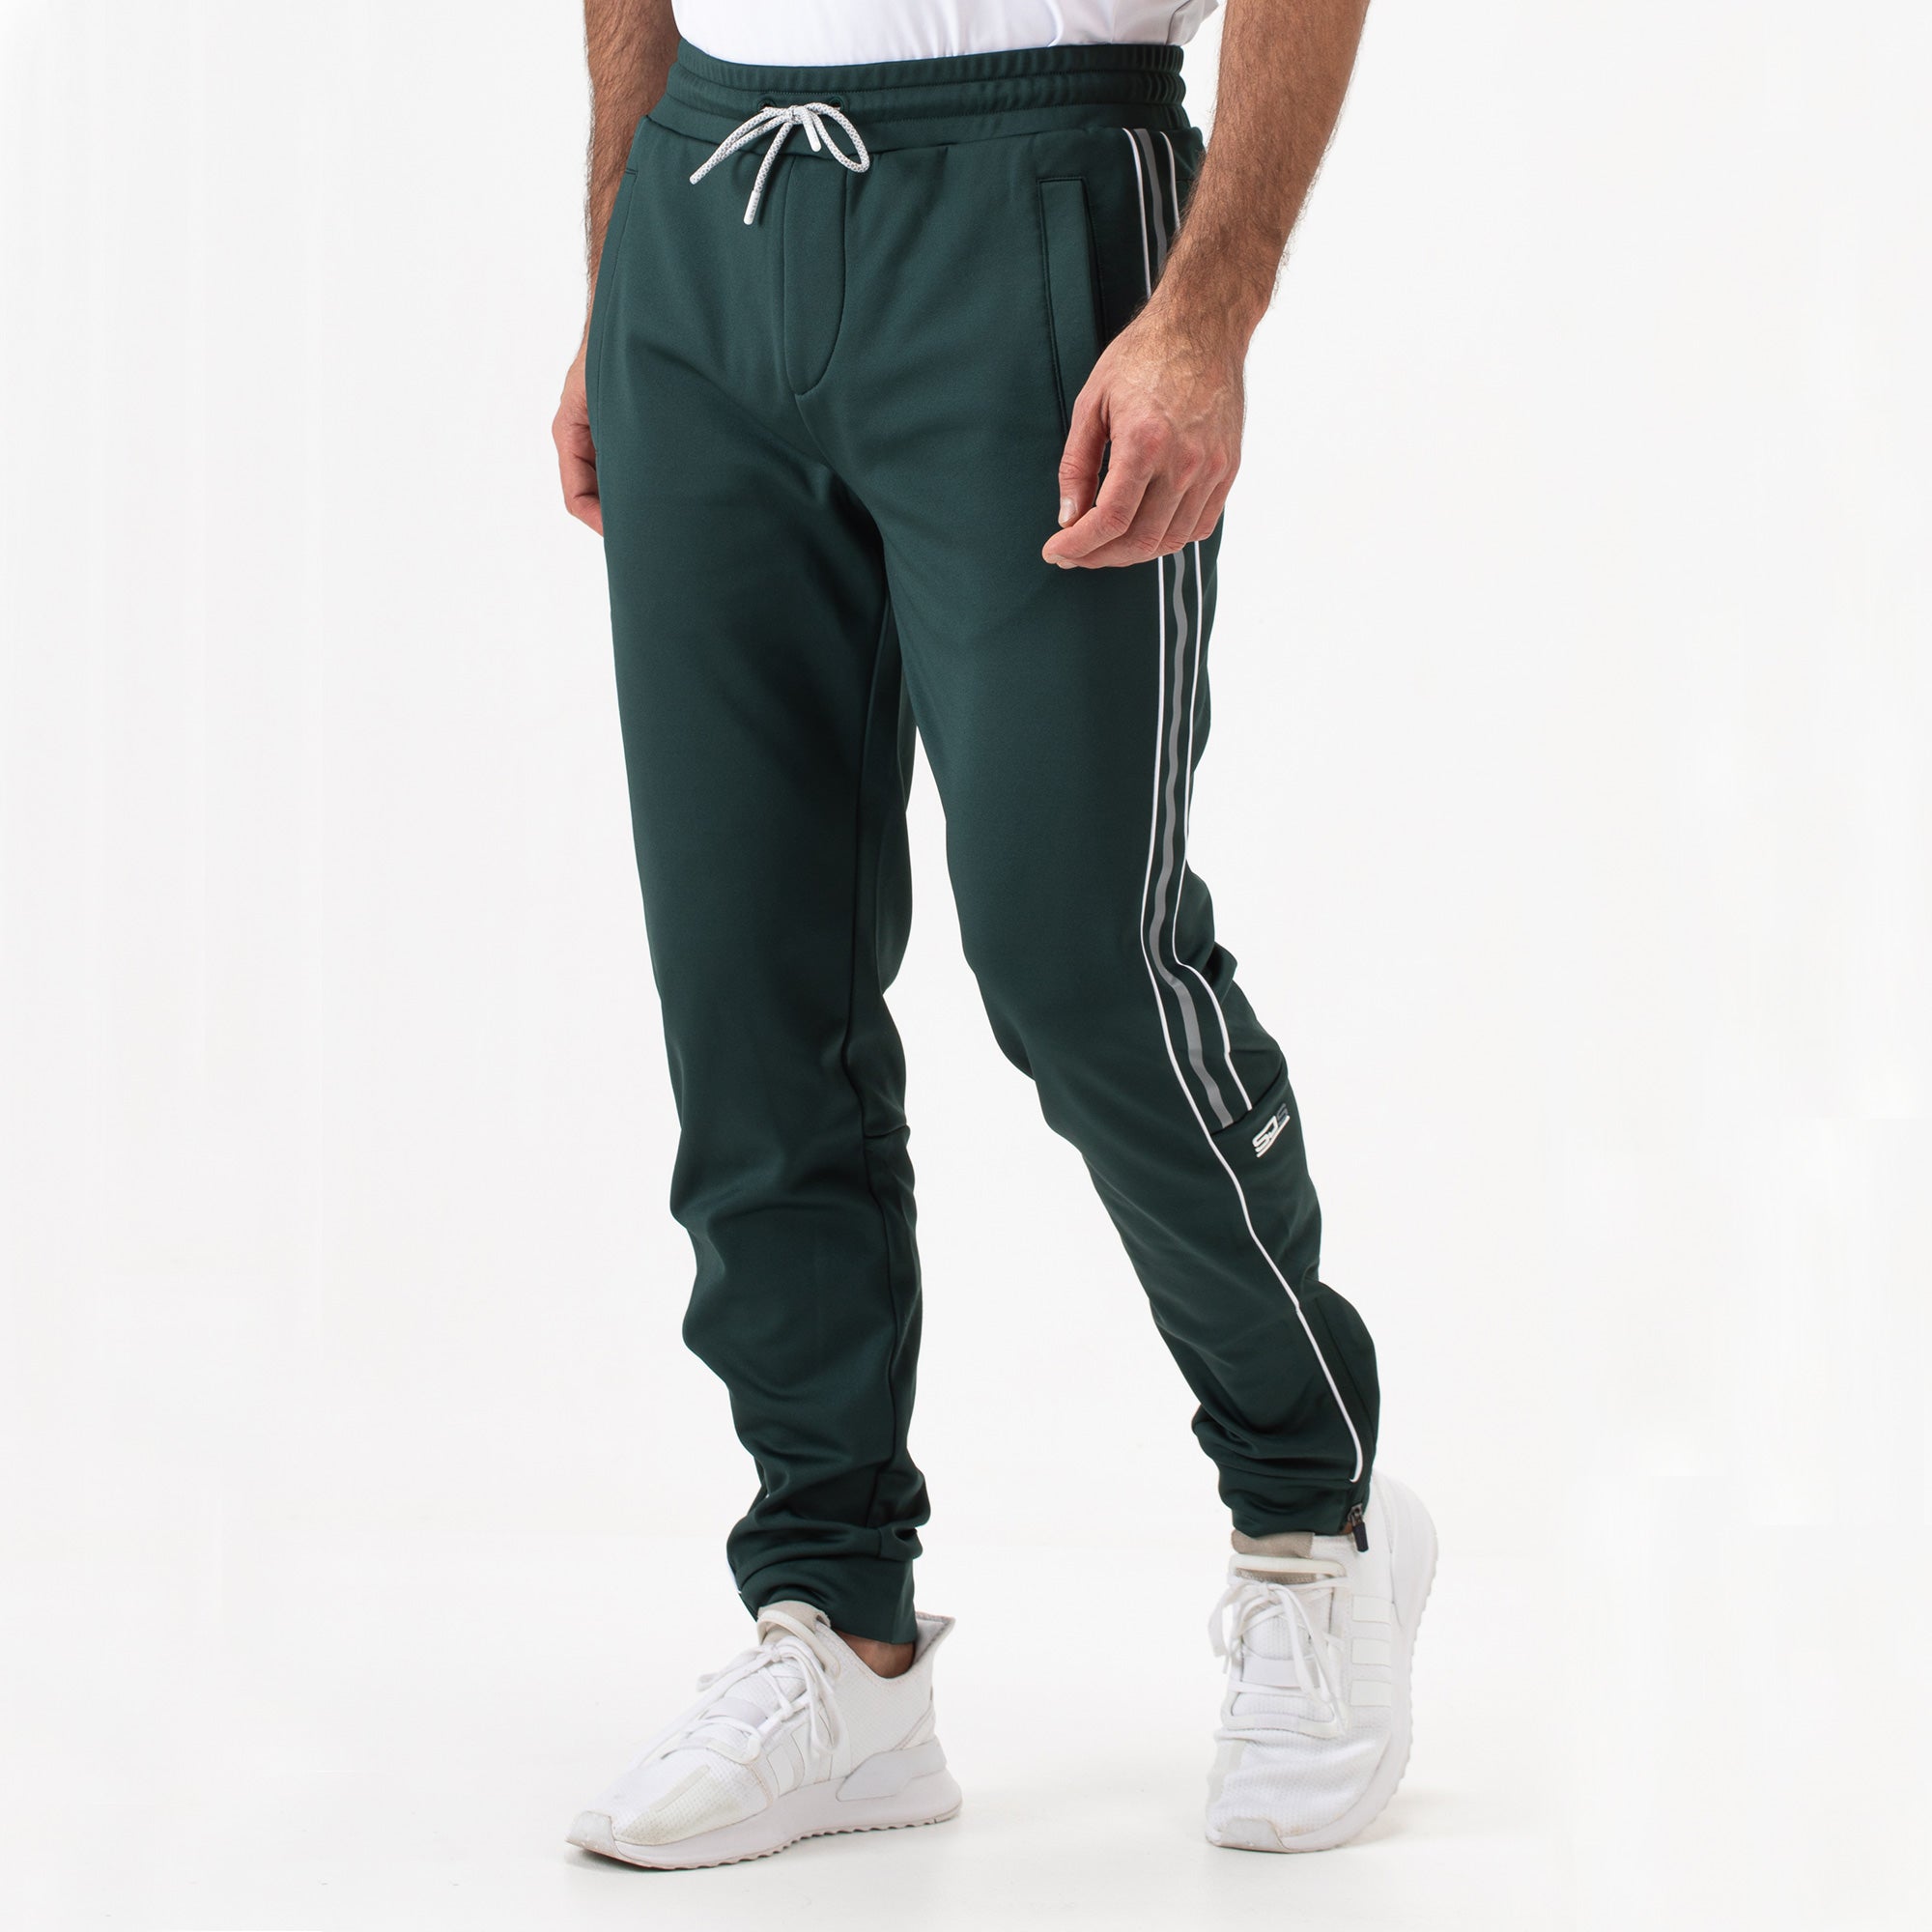 Sjeng Sports Dorsey Men's Tennis Pants - Green (1)